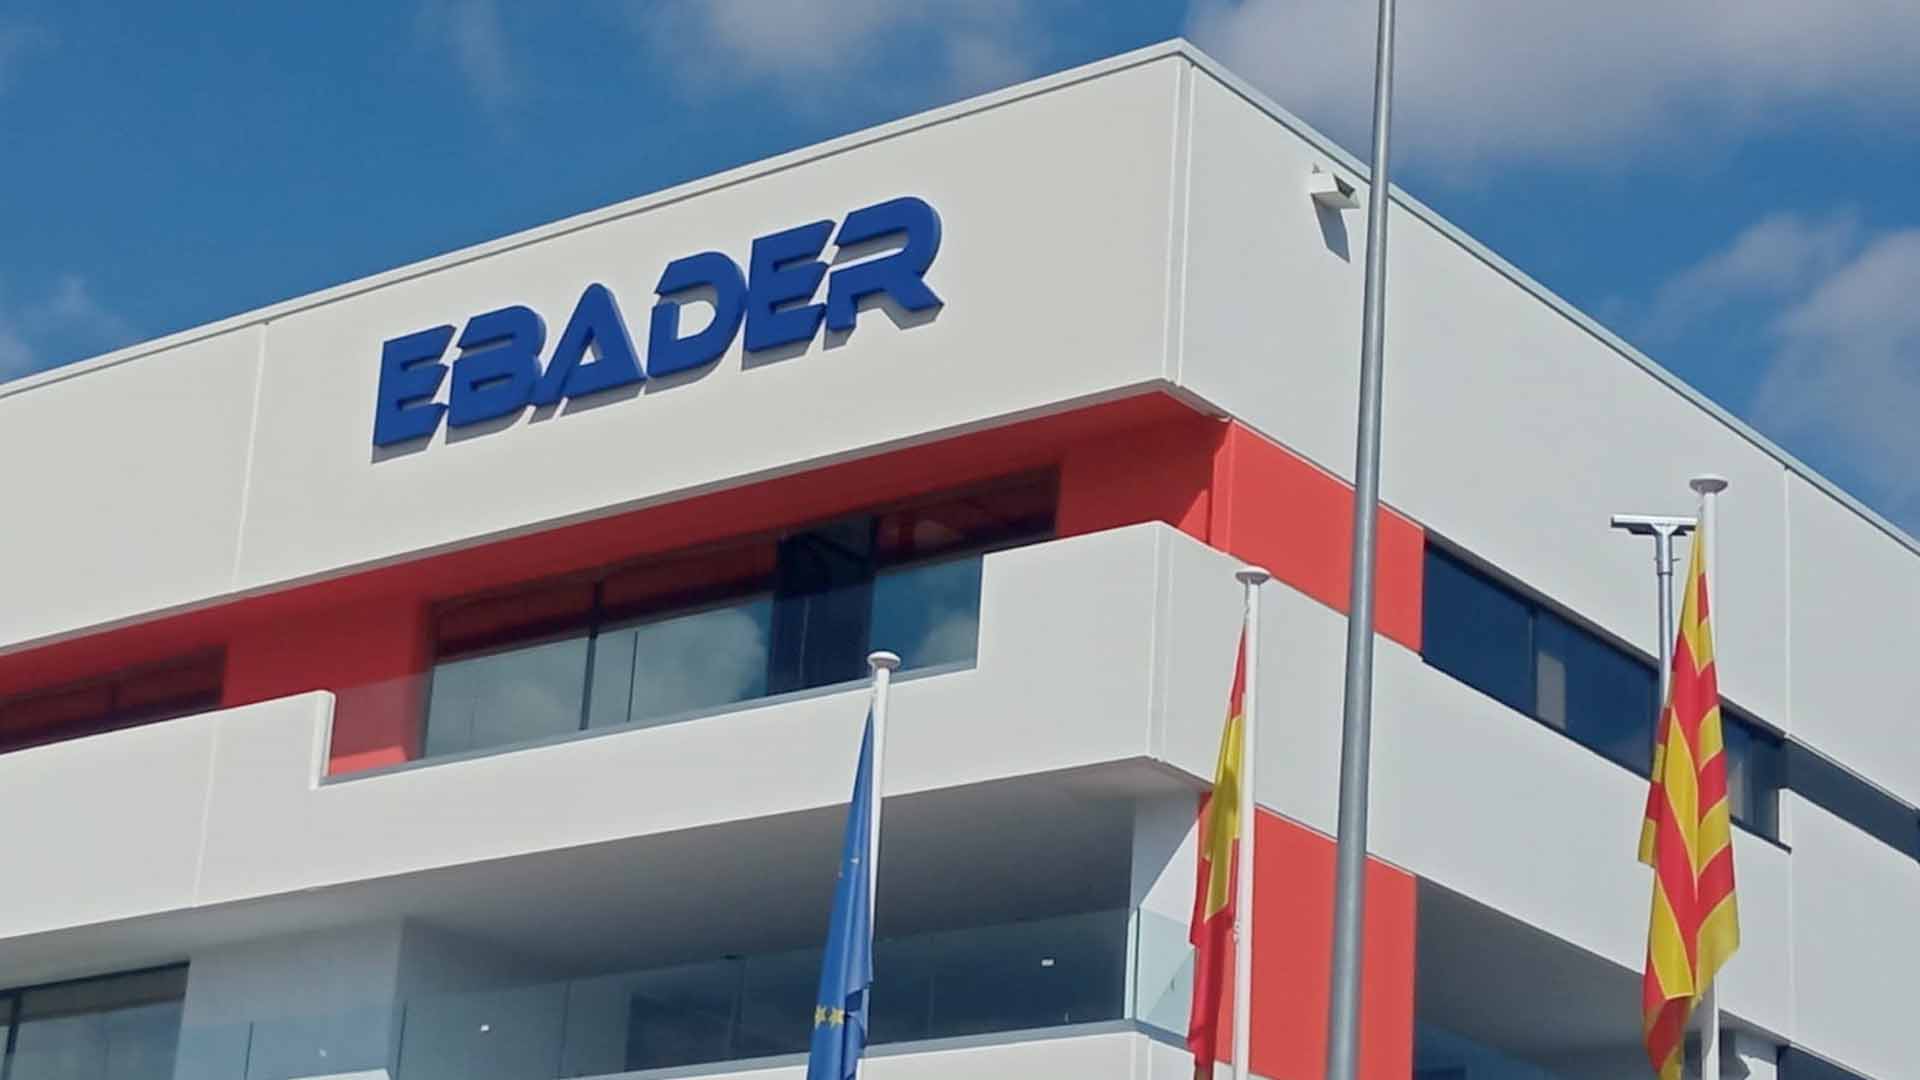 Nave industrial Ebader (Polinyà)